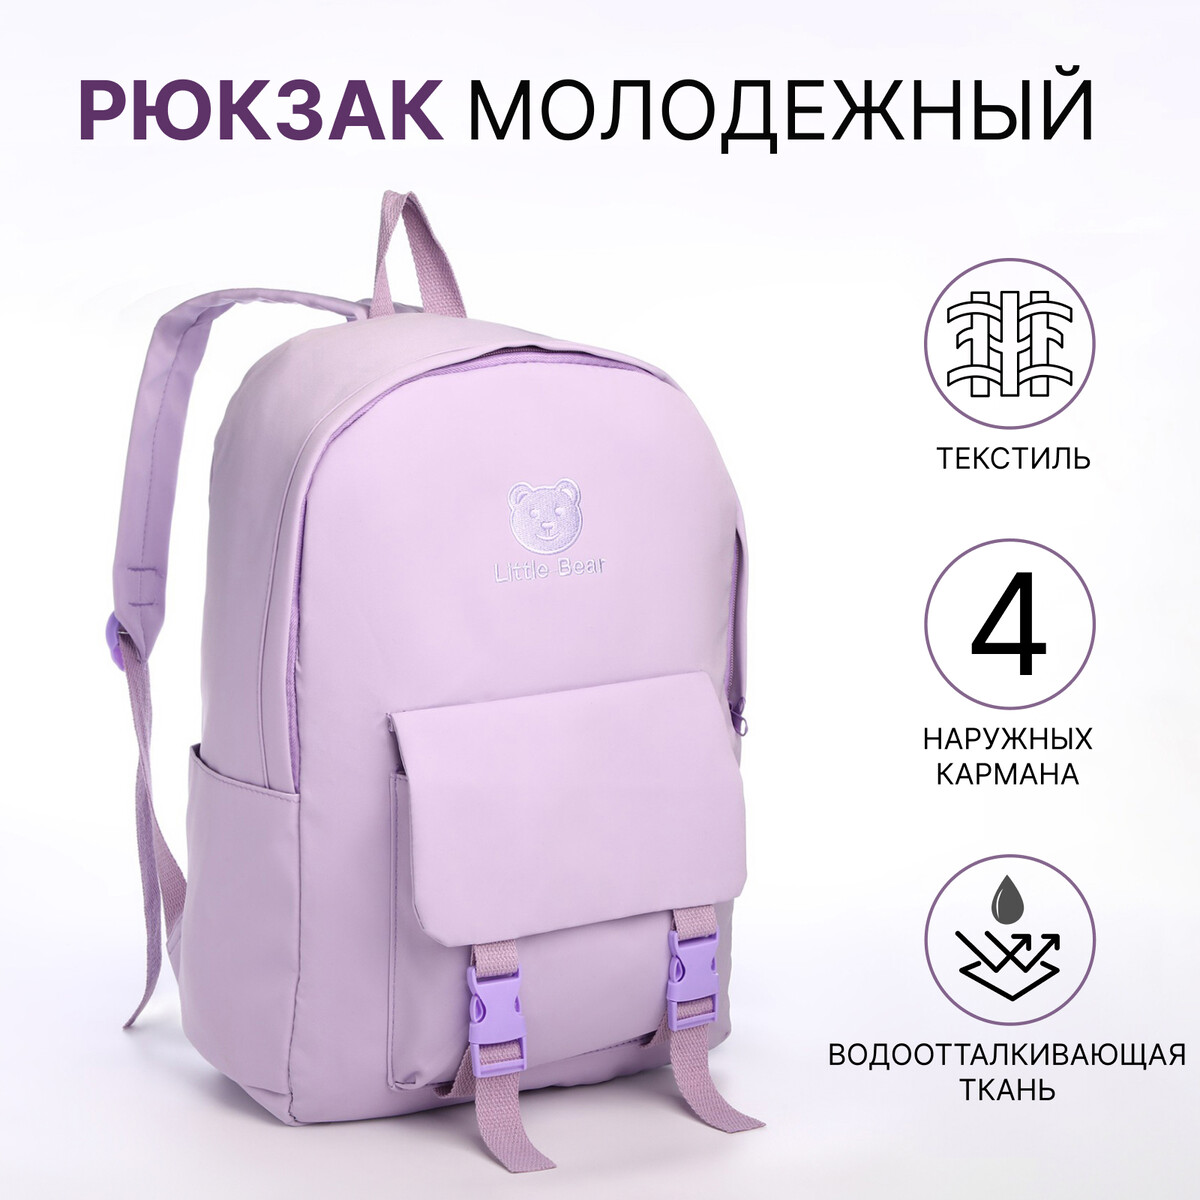 Рюкзак школьный из текстиля на молнии, 4 кармана, цвет сиреневый рюкзак школьный из текстиля на молнии 4 кармана сиреневый